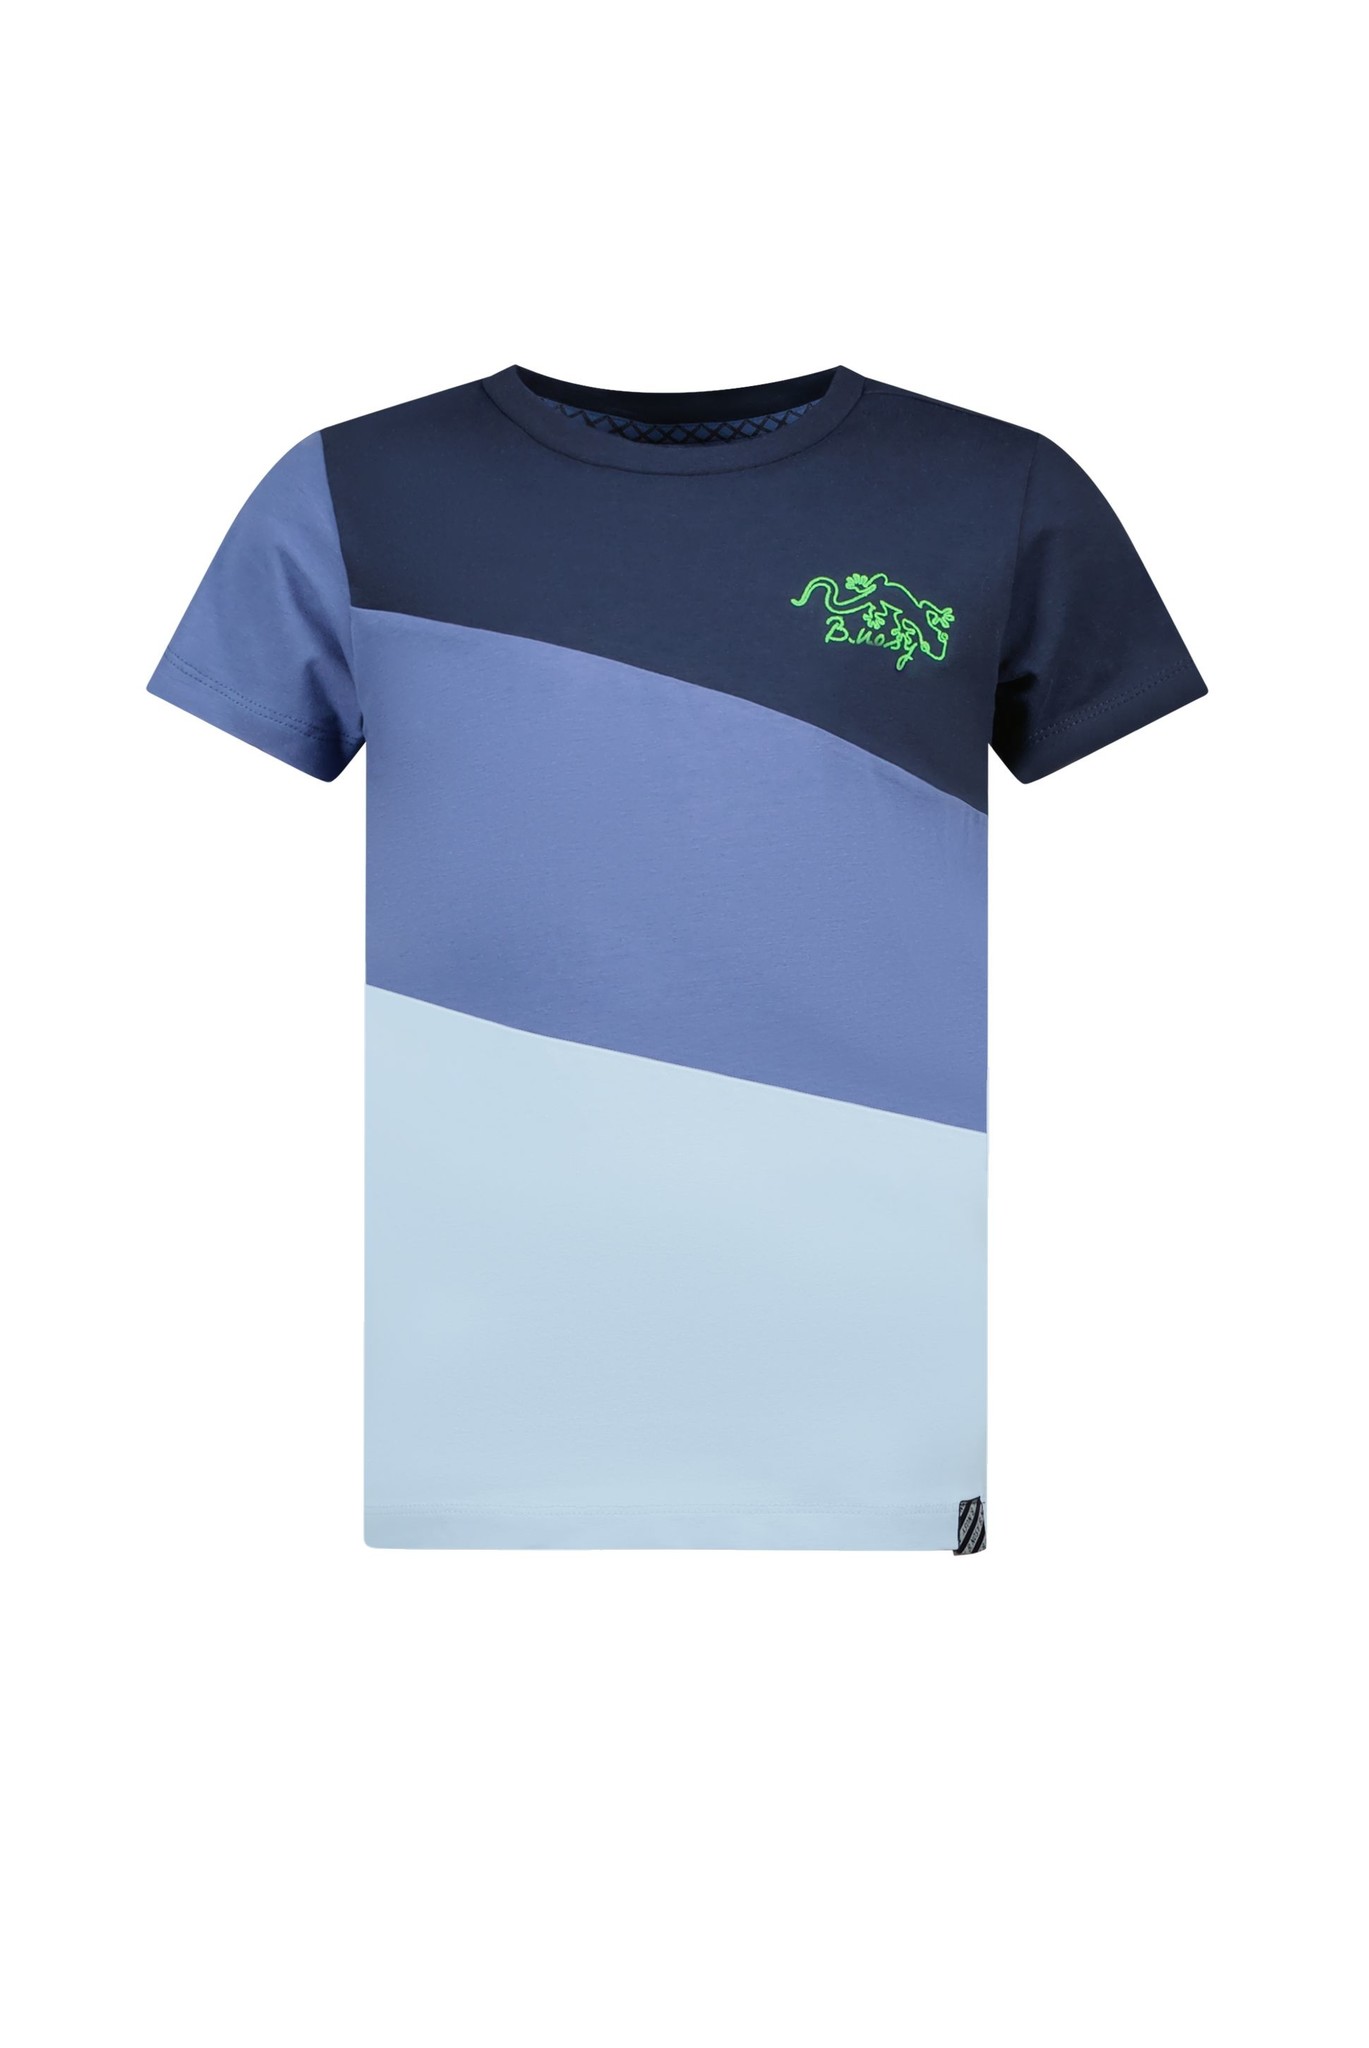 B. Nosy Y303-6444 Jongens T-shirt Maat 98